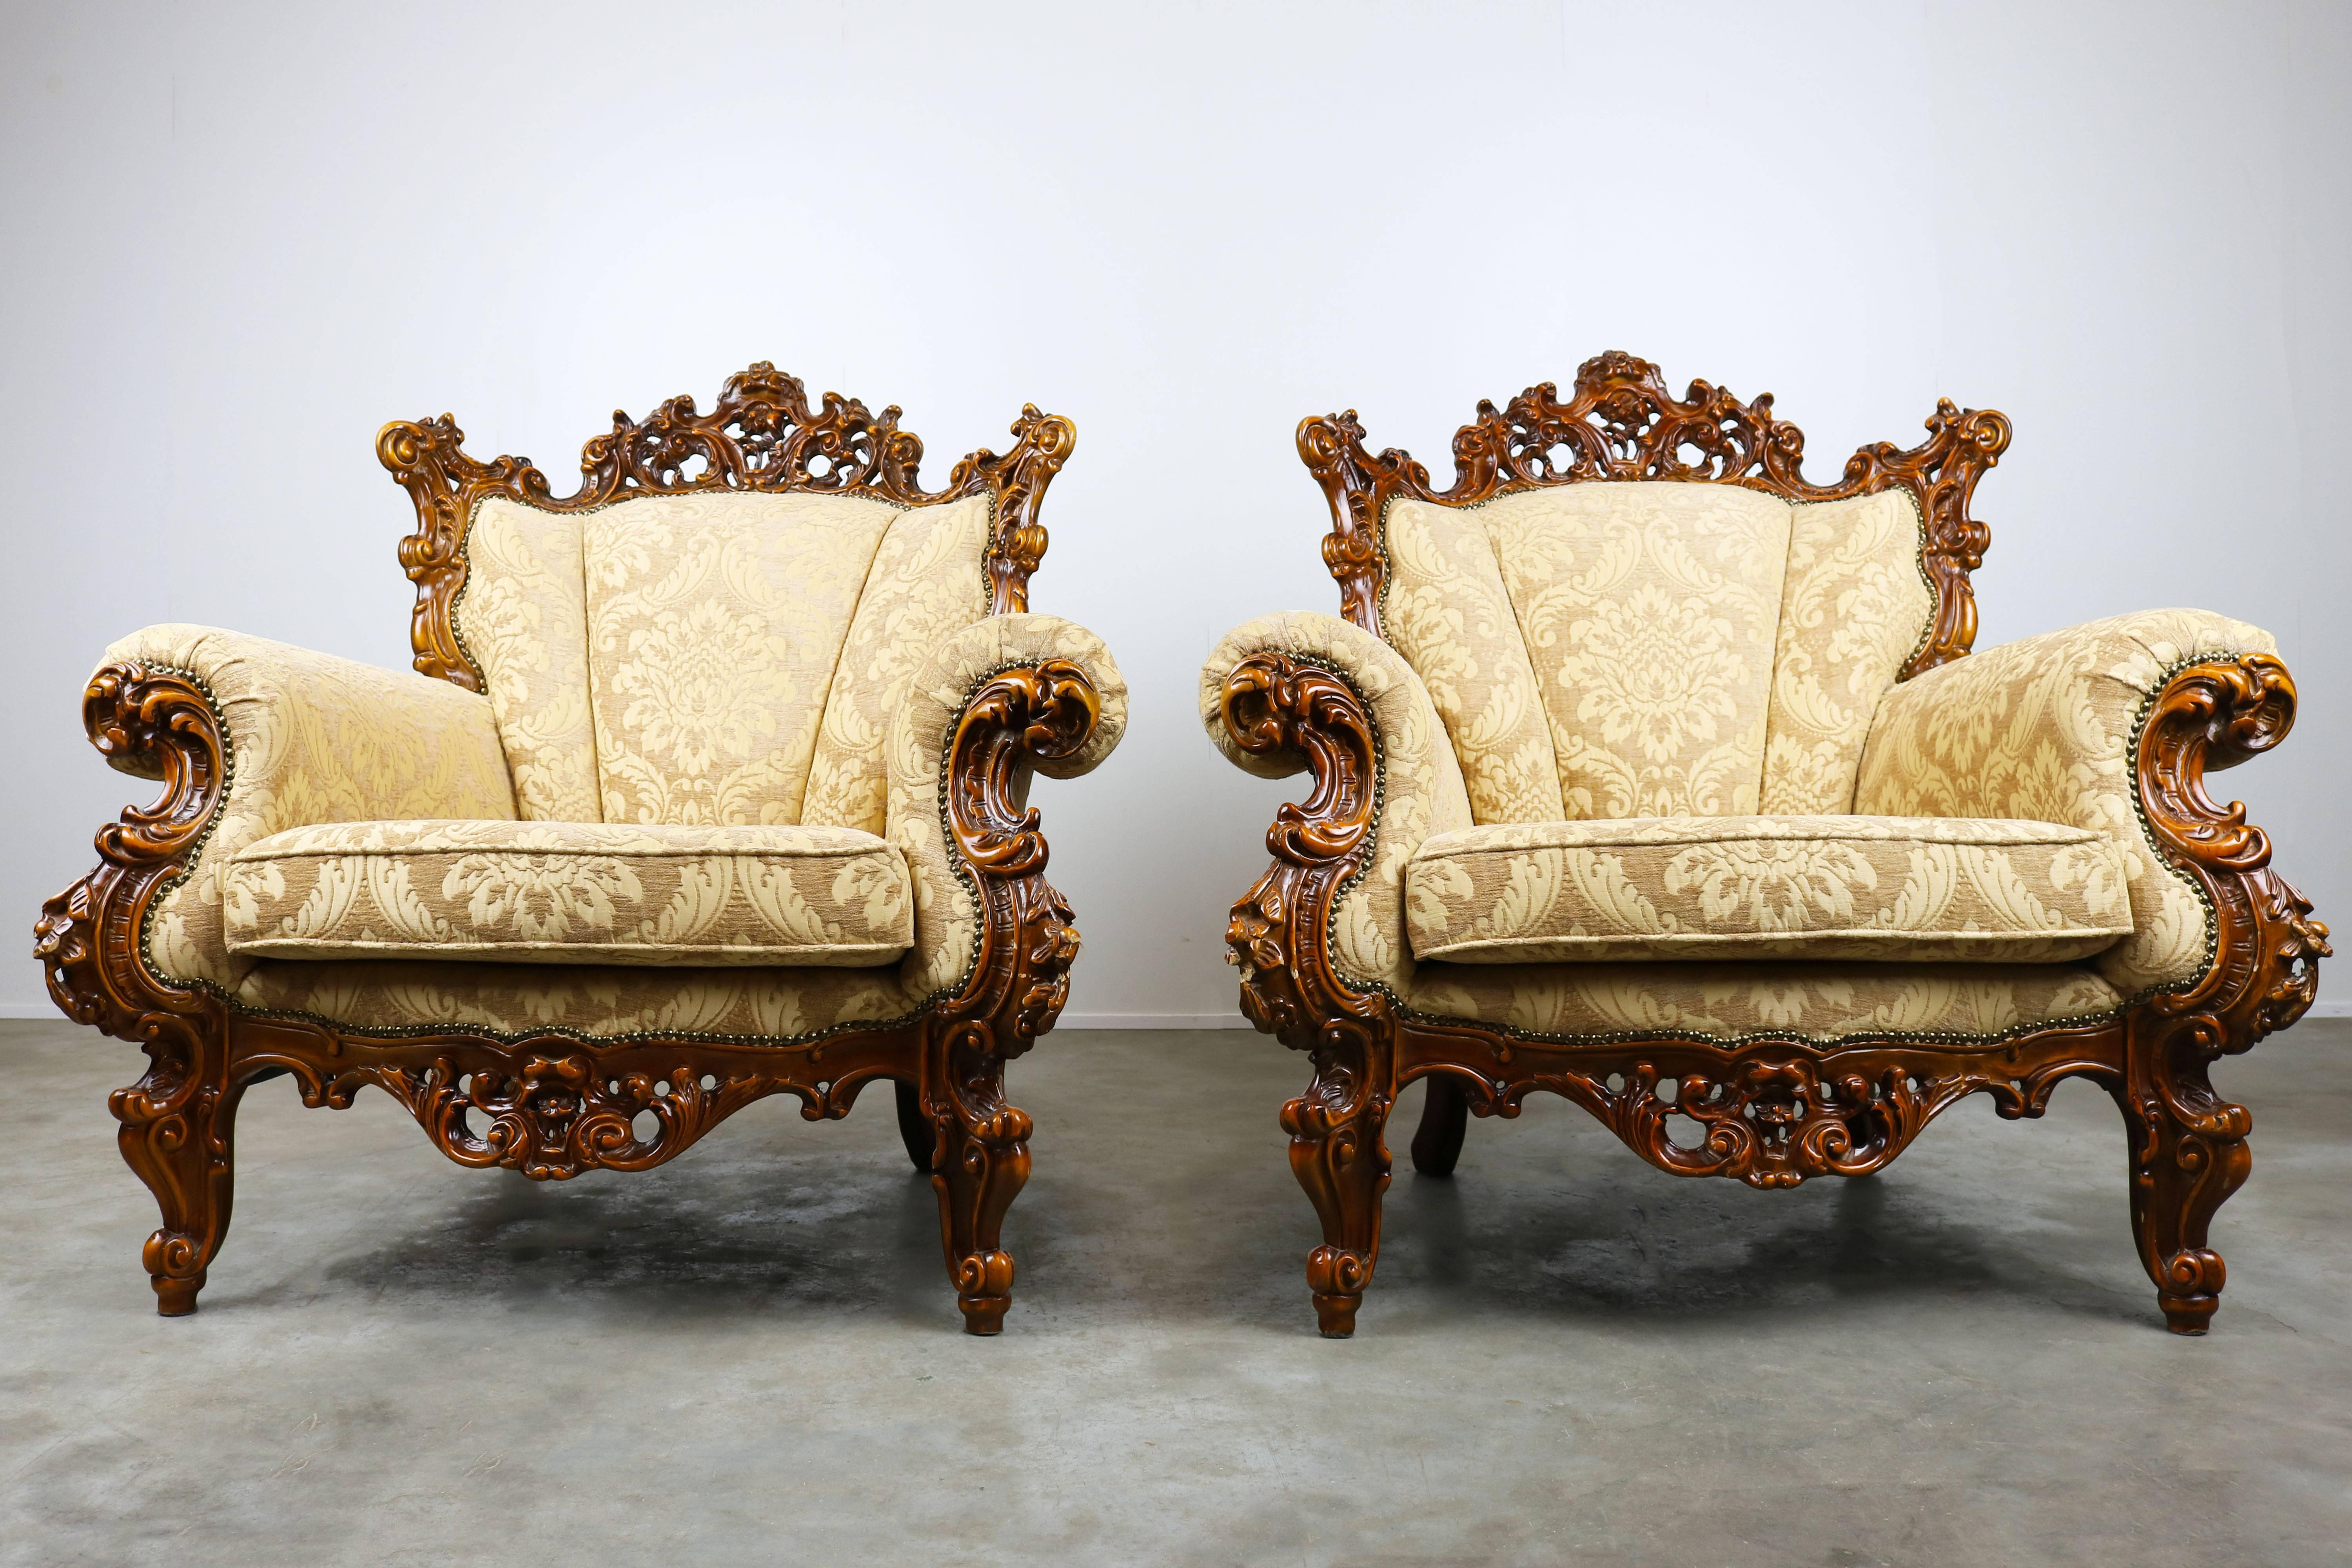 Ein wunderbares Paar luxuriöser antiker italienischer Sessel im Rokoko/Barock-Stil. Die Stühle wurden vor kurzem neu gepolstert und haben eine königliche und warme Ausstrahlung. Sie sind sehr bequem und in perfekter Form. Ein toller Blickfang für